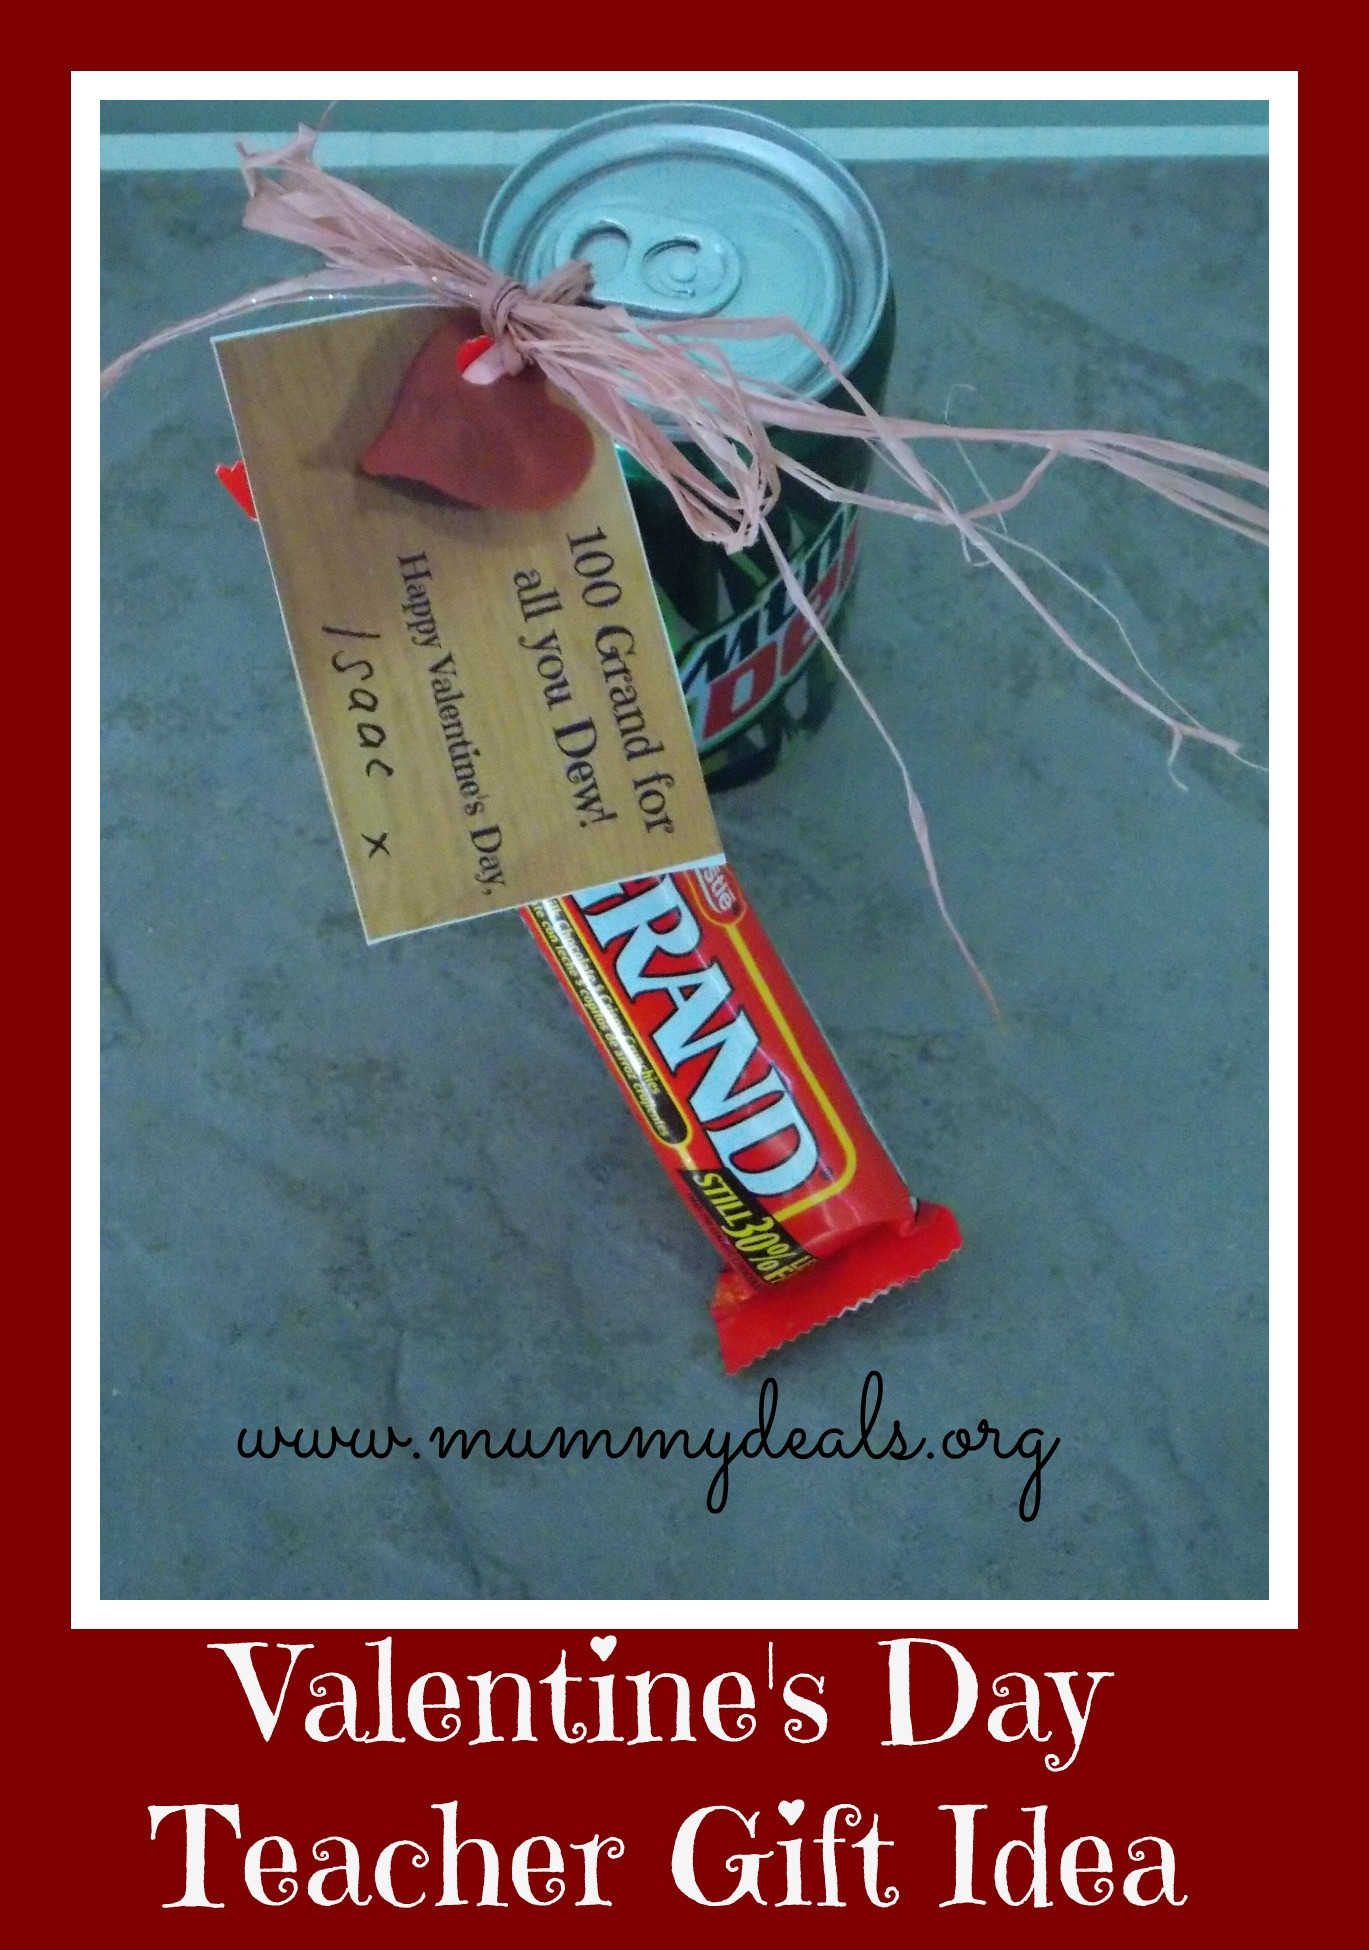 Valentines Teacher Gift Ideas
 6 Valentine s Day Teacher Gift Ideas Mummy Deals